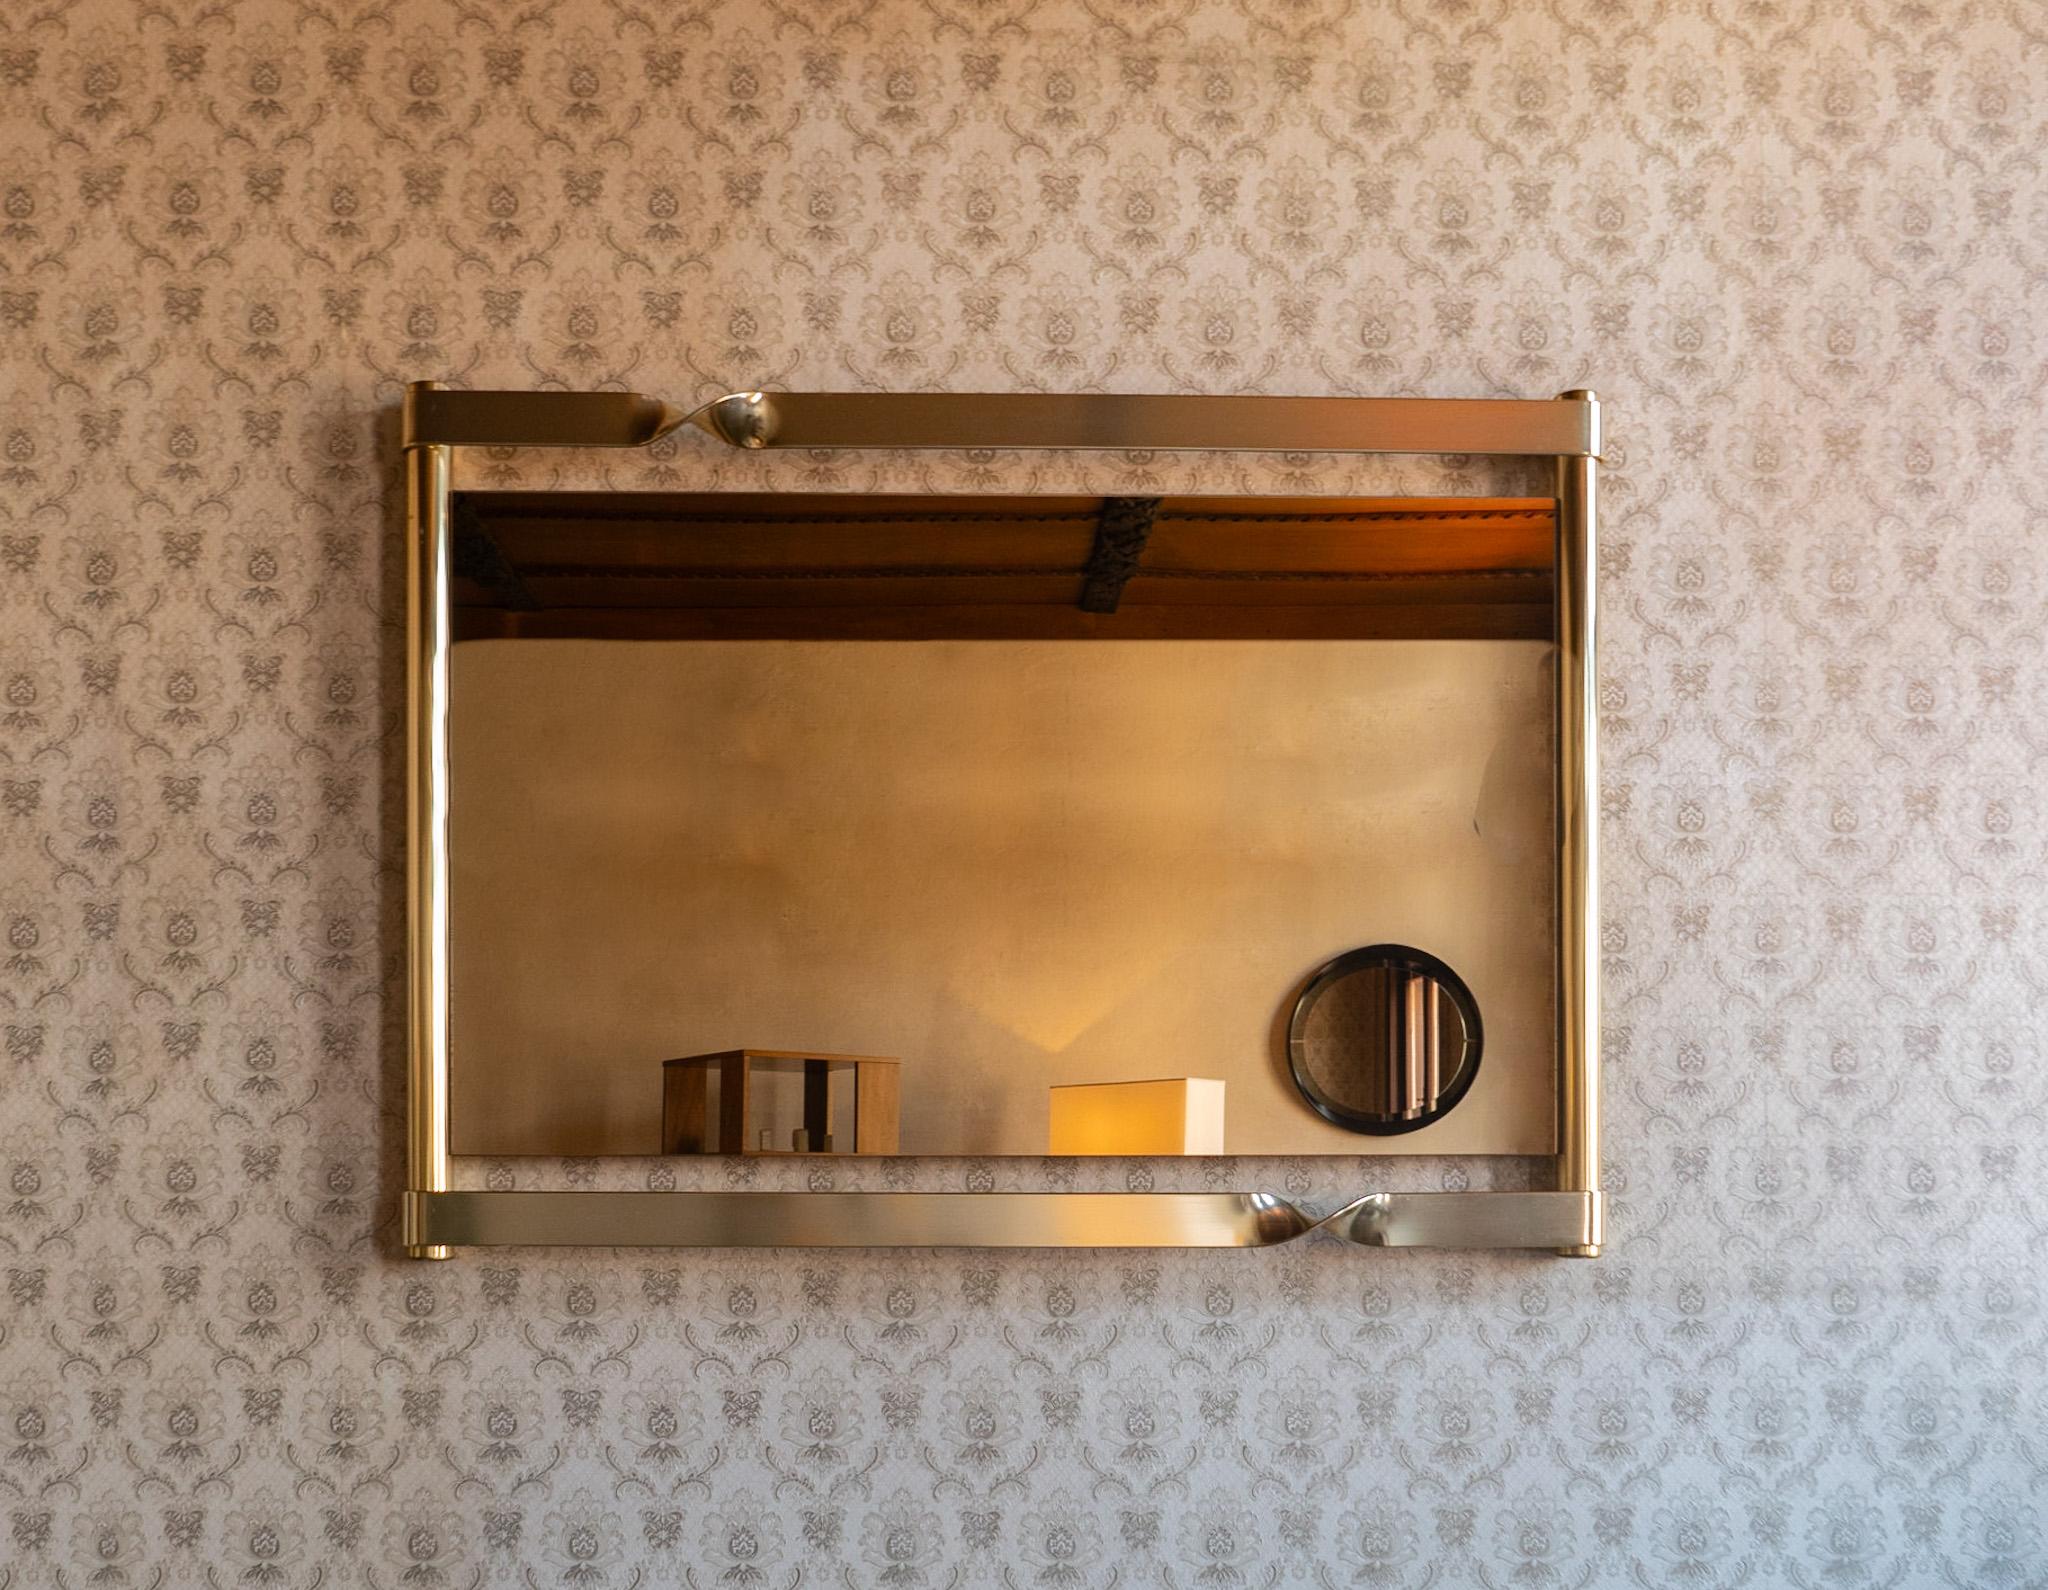 Moderner Messing-Glas-Spiegel im Stil von Luciano Frigerio, Italien 1970er Jahre.

Wir präsentieren ein atemberaubendes Schmuckstück, das Raffinesse und Eleganz ausstrahlt - ein großes Messing  Wandspiegel mit geschwungenen Elementen und Rauchglas,